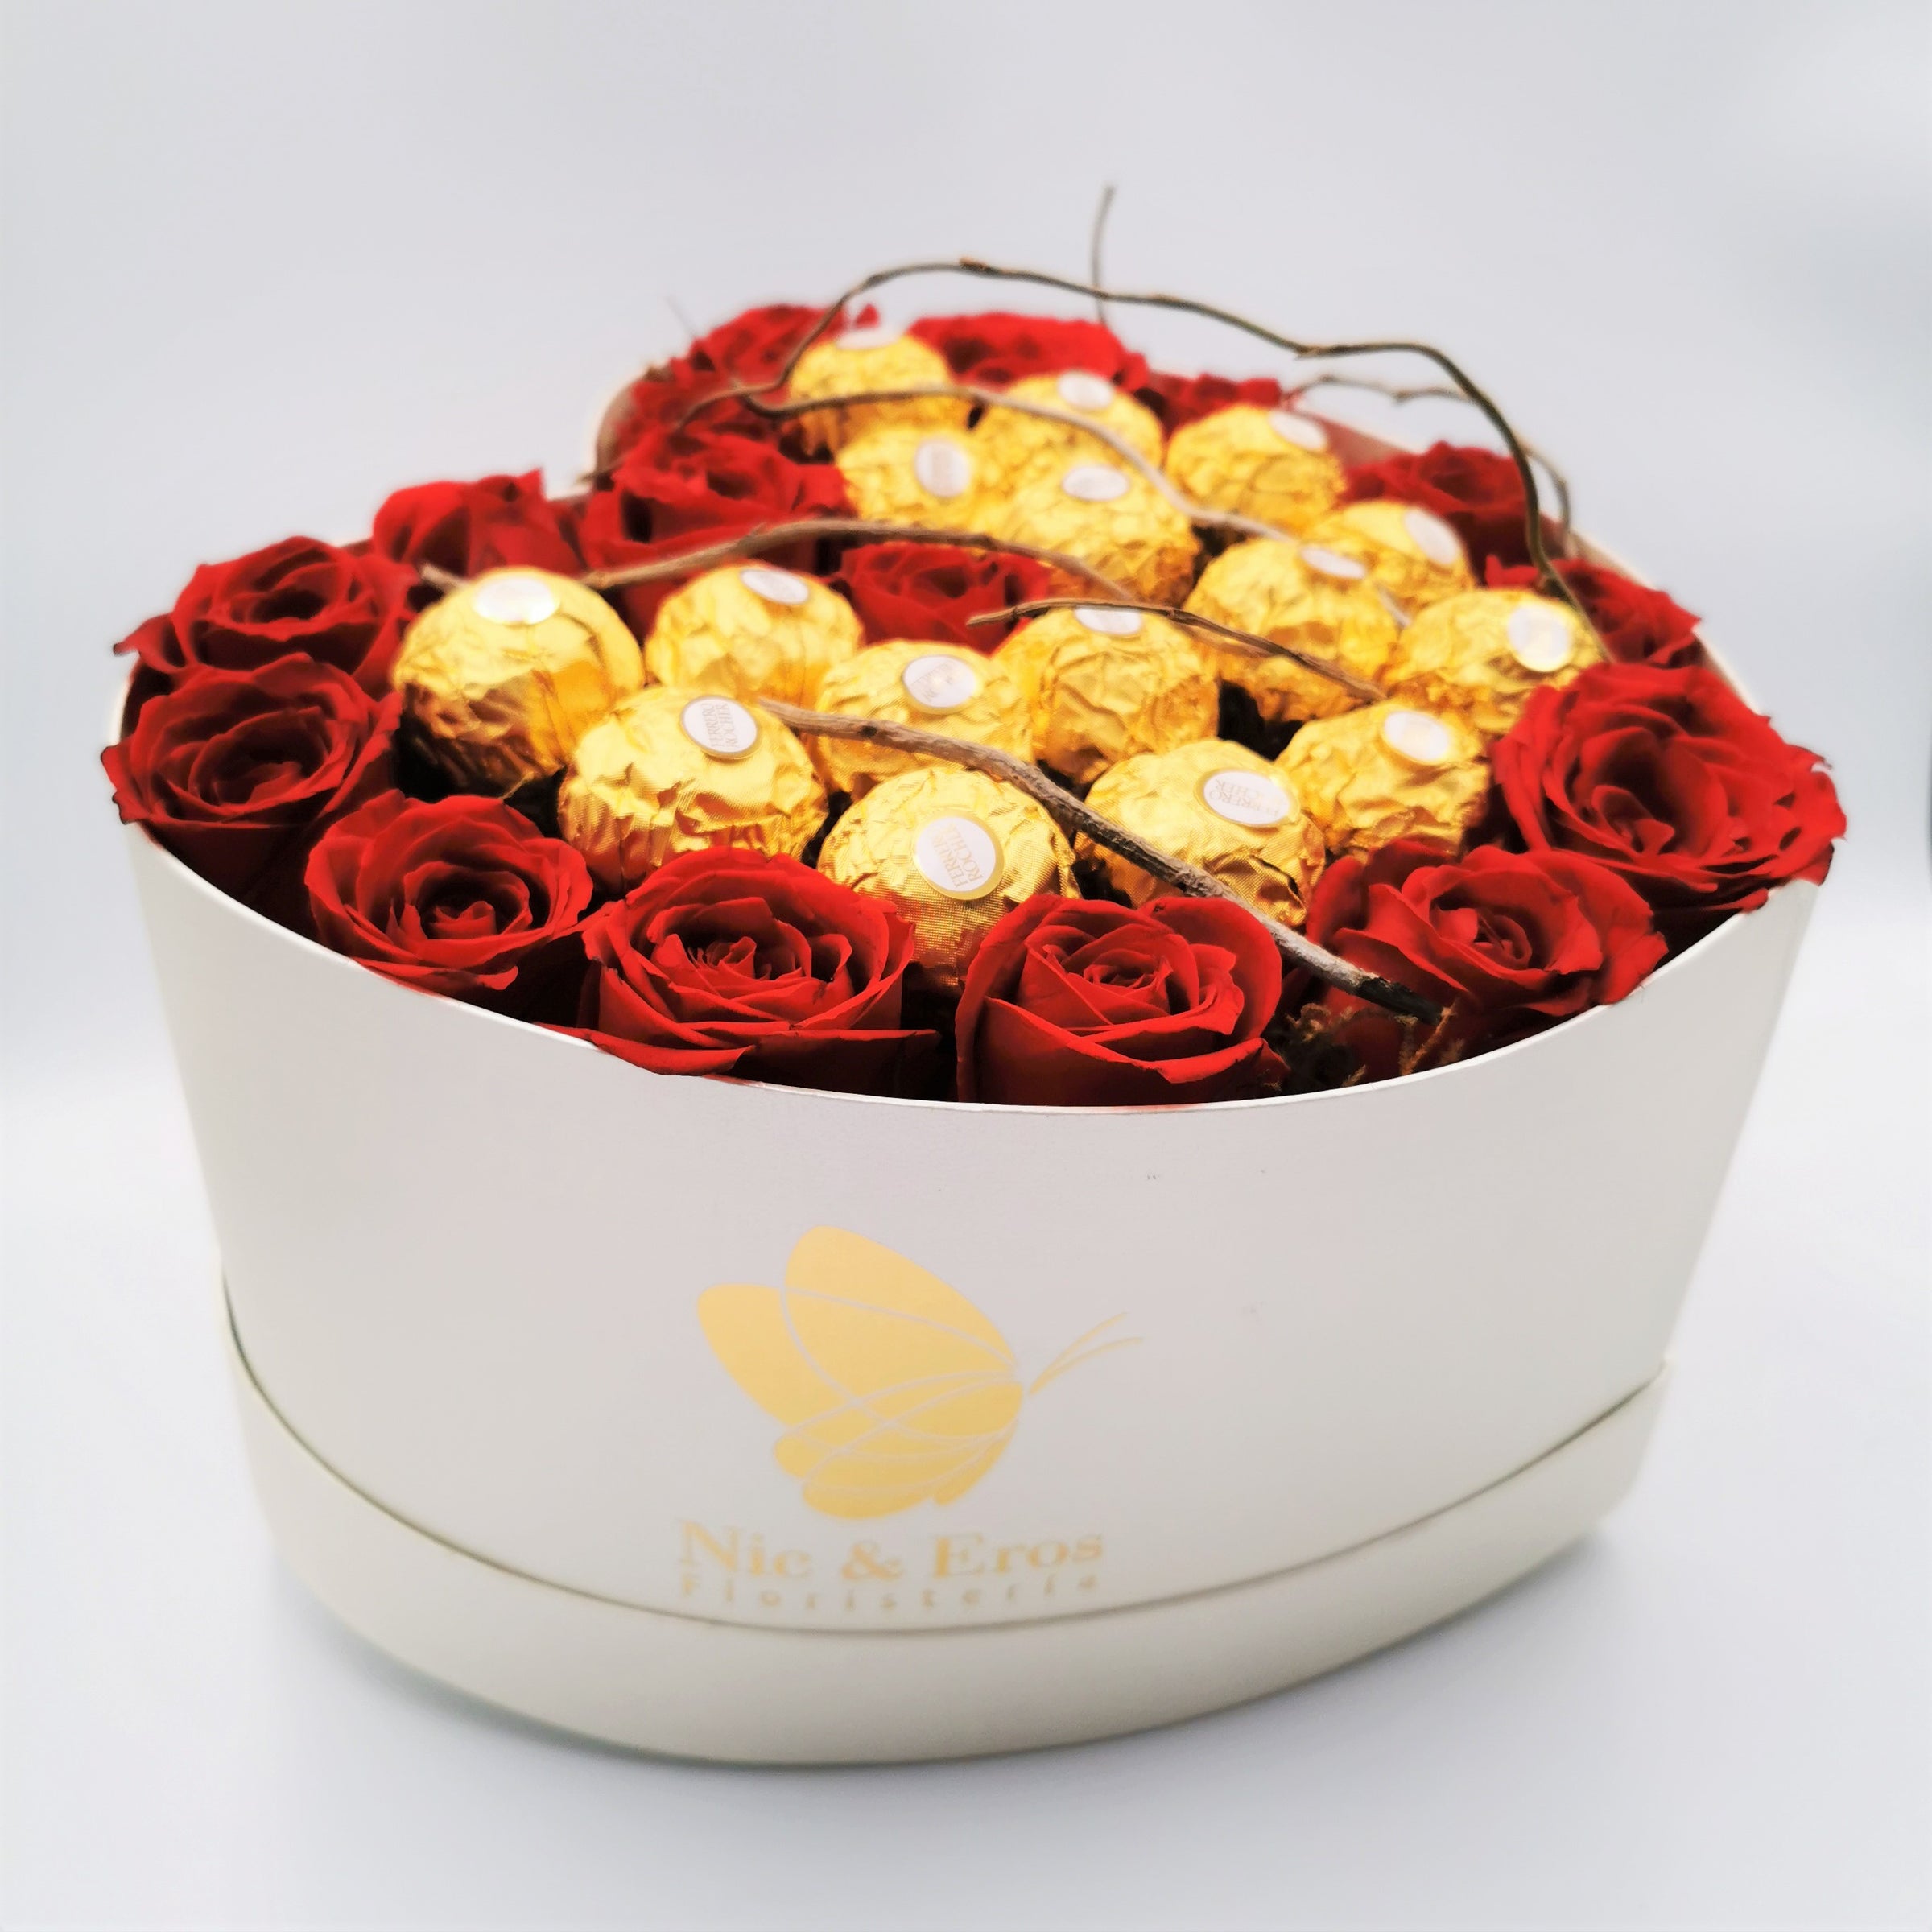 Caja corazón con rosas y chocolates, corazón con flores 